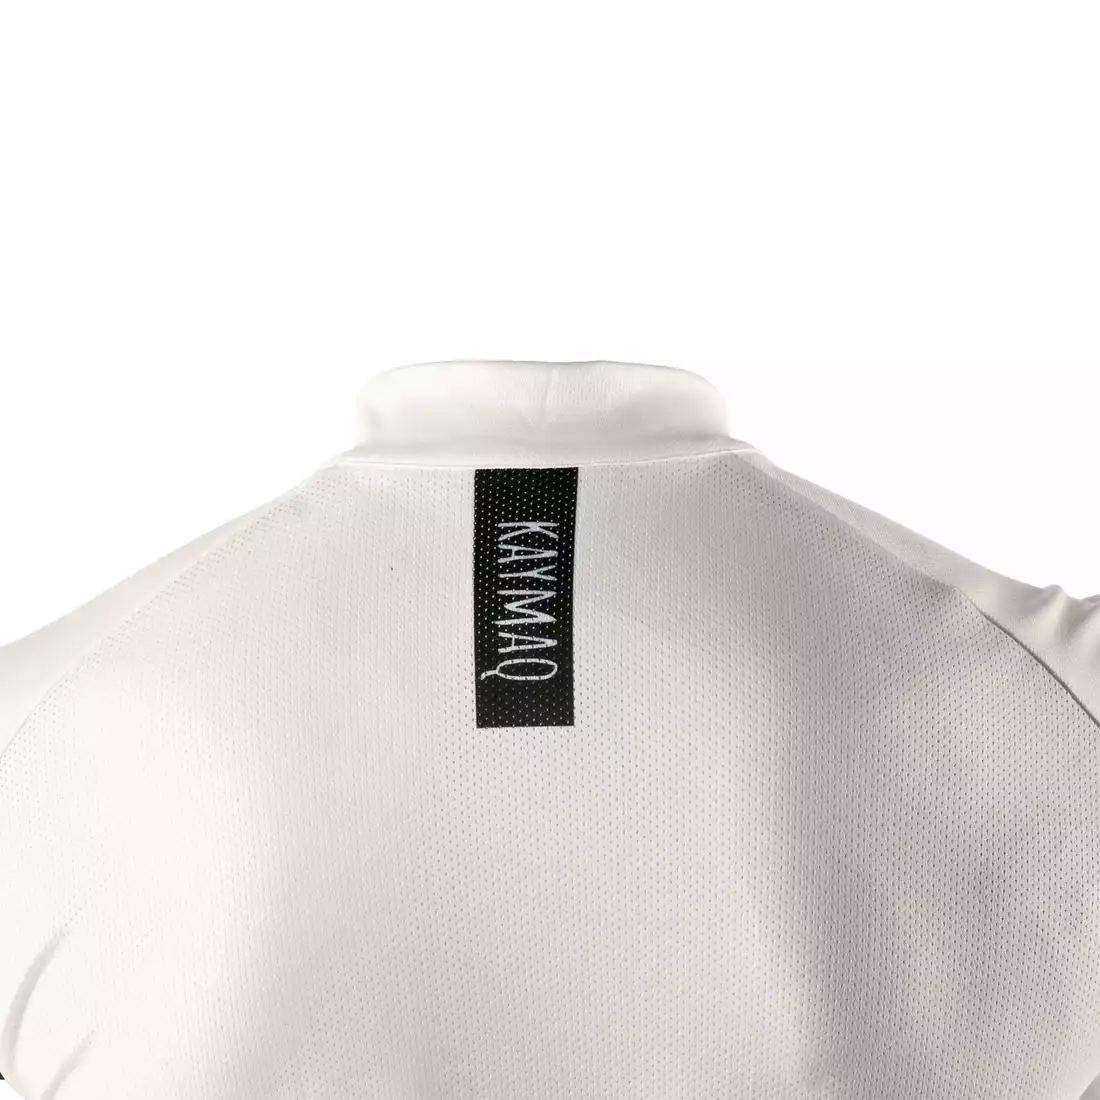 KAYMAQ SLEEVELESS męska koszulka rowerowa bez rękawów 01.217, biały